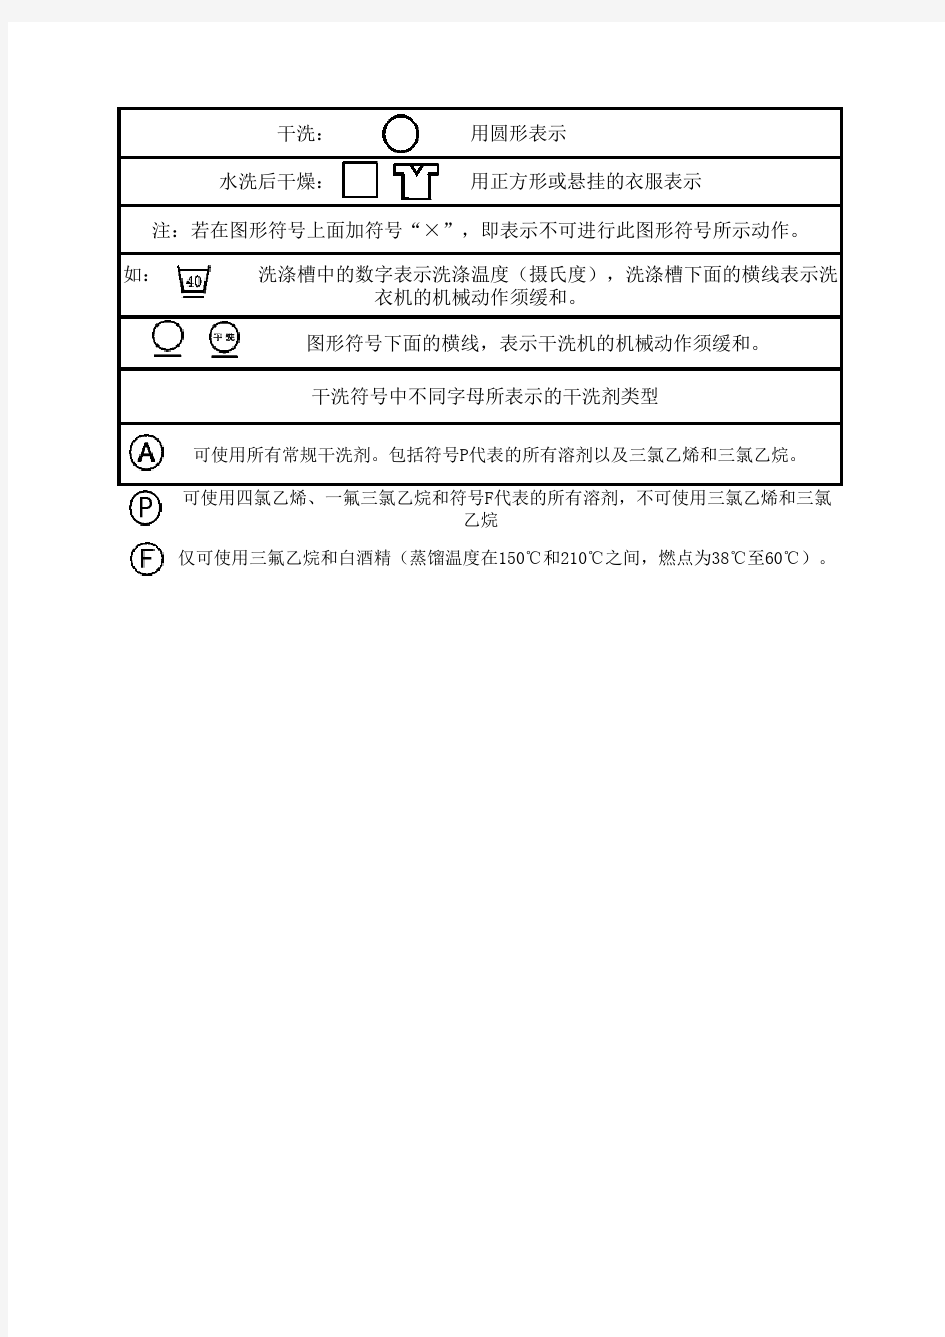 服装洗涤国际标志中文对照表(1)